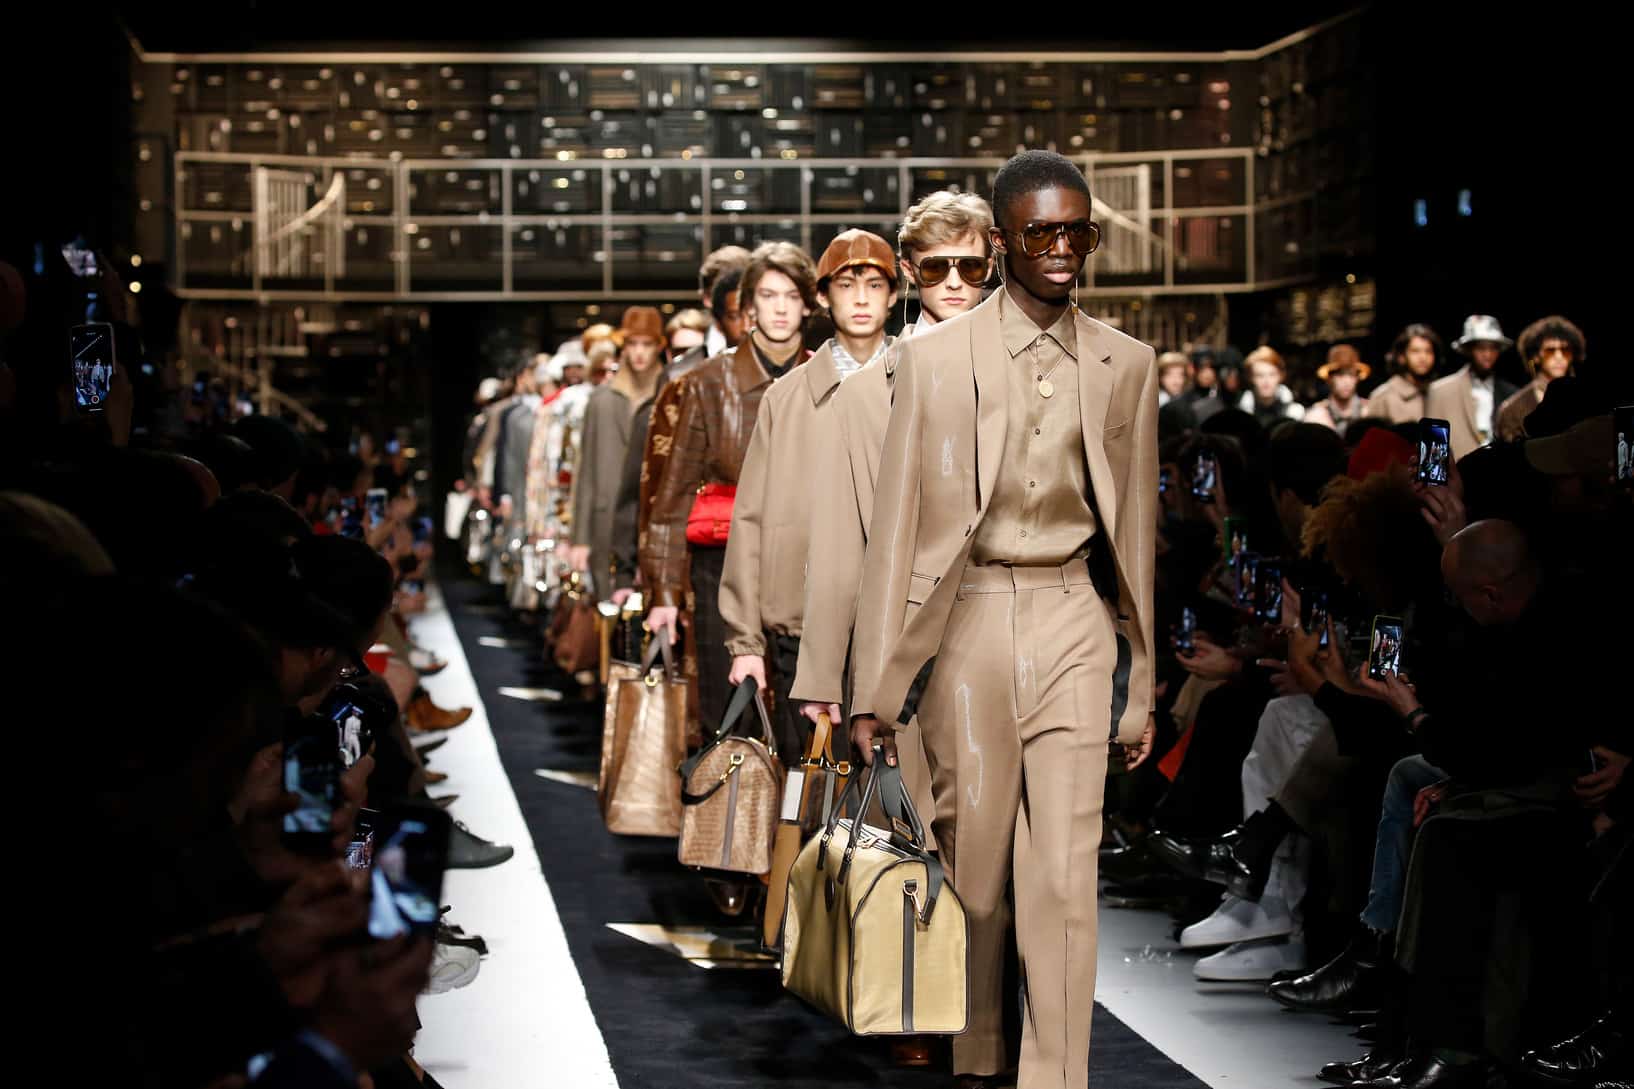 Karl Lagerfeld's Final Fendi Show At Milan Fashion Week, British Vogue